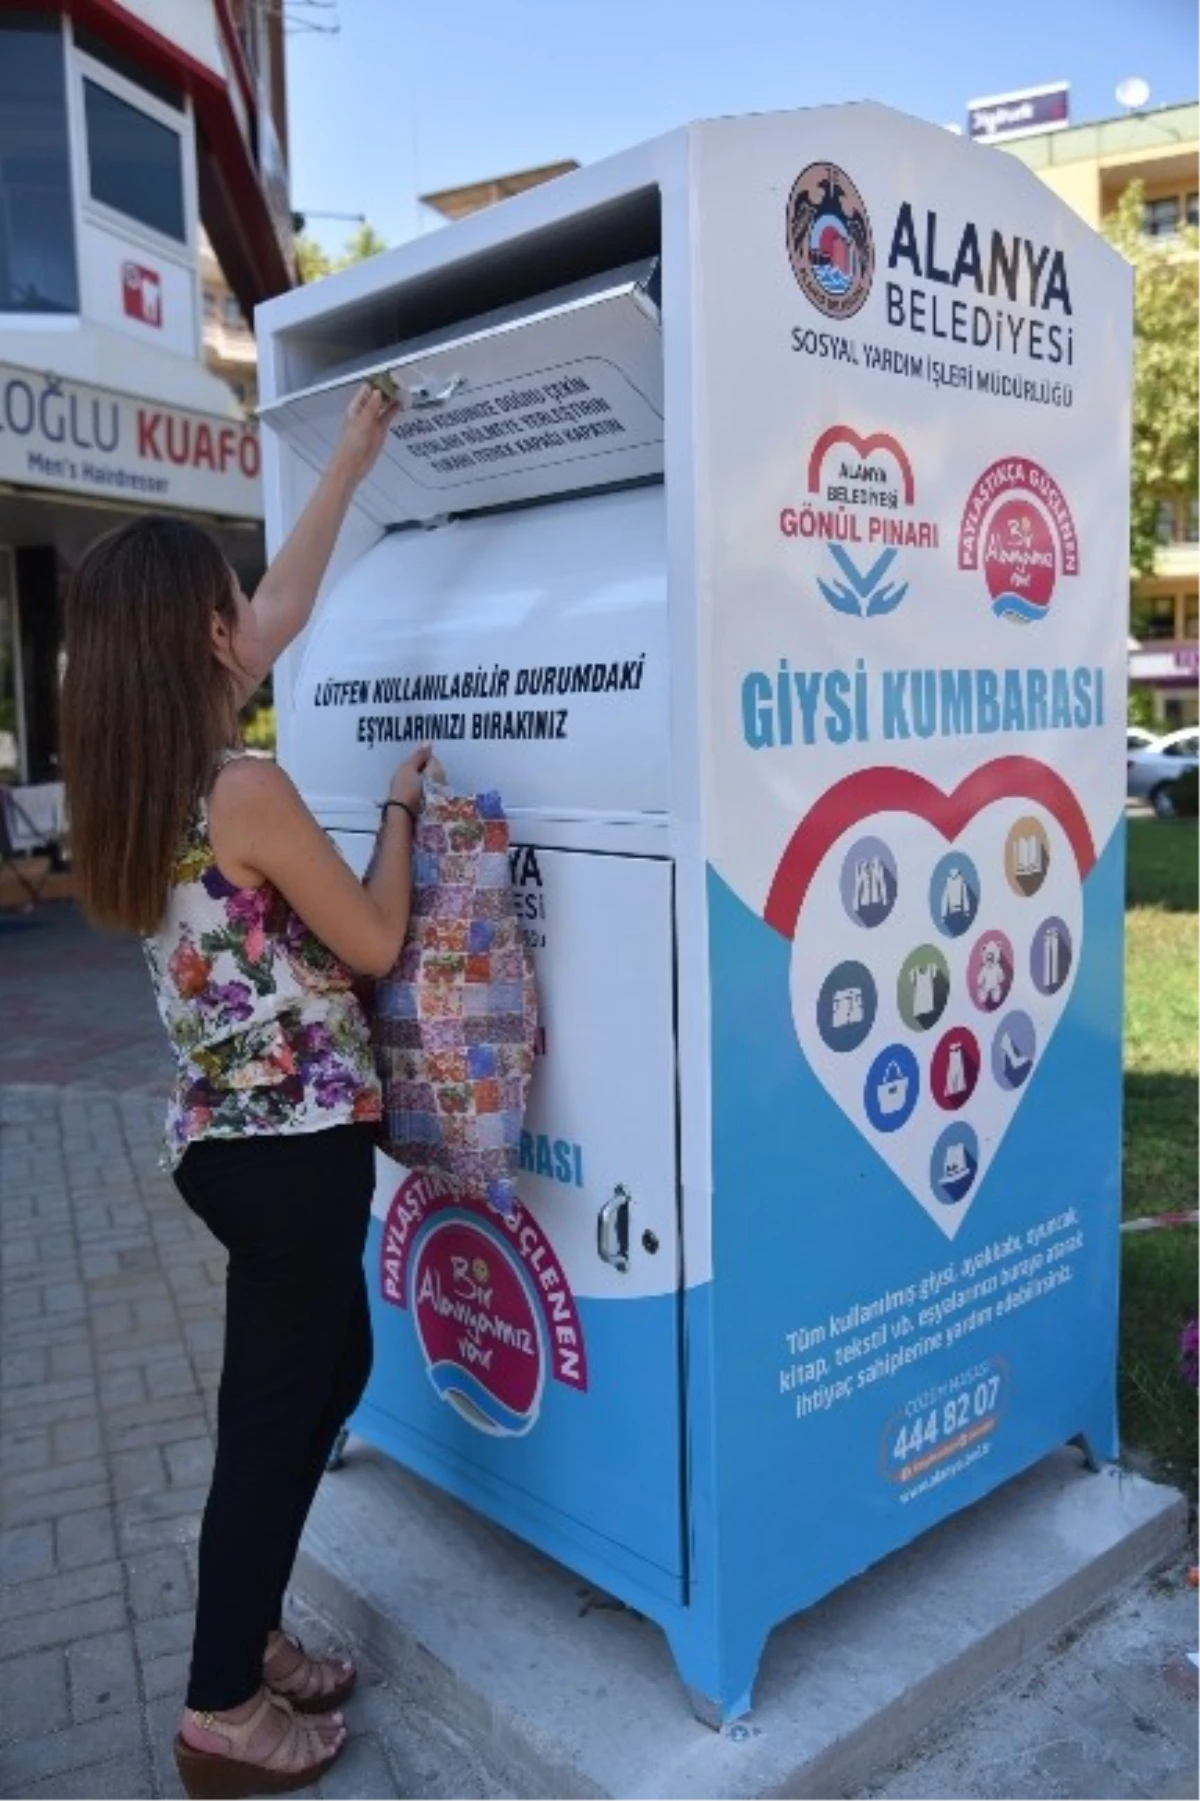 Alanya\'da 4 Noktaya Gönül Pınarı Giysi Kumbarası Kuruldu